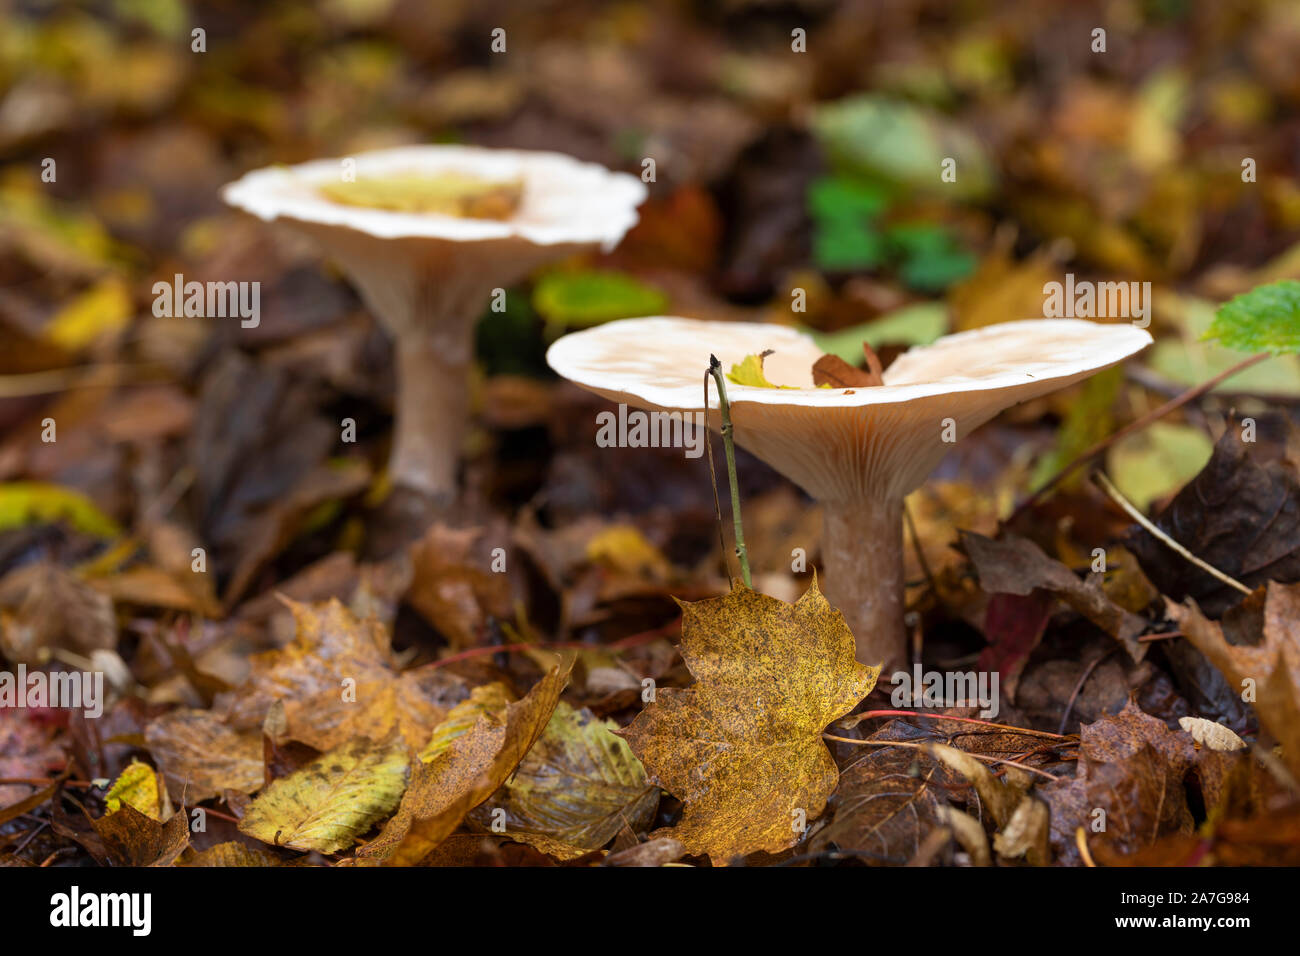 Gros plan sur les champignons de Trooping sur le sol de la forêt parmi les feuilles d'or tombées en automne, Angleterre, Royaume-Uni Banque D'Images